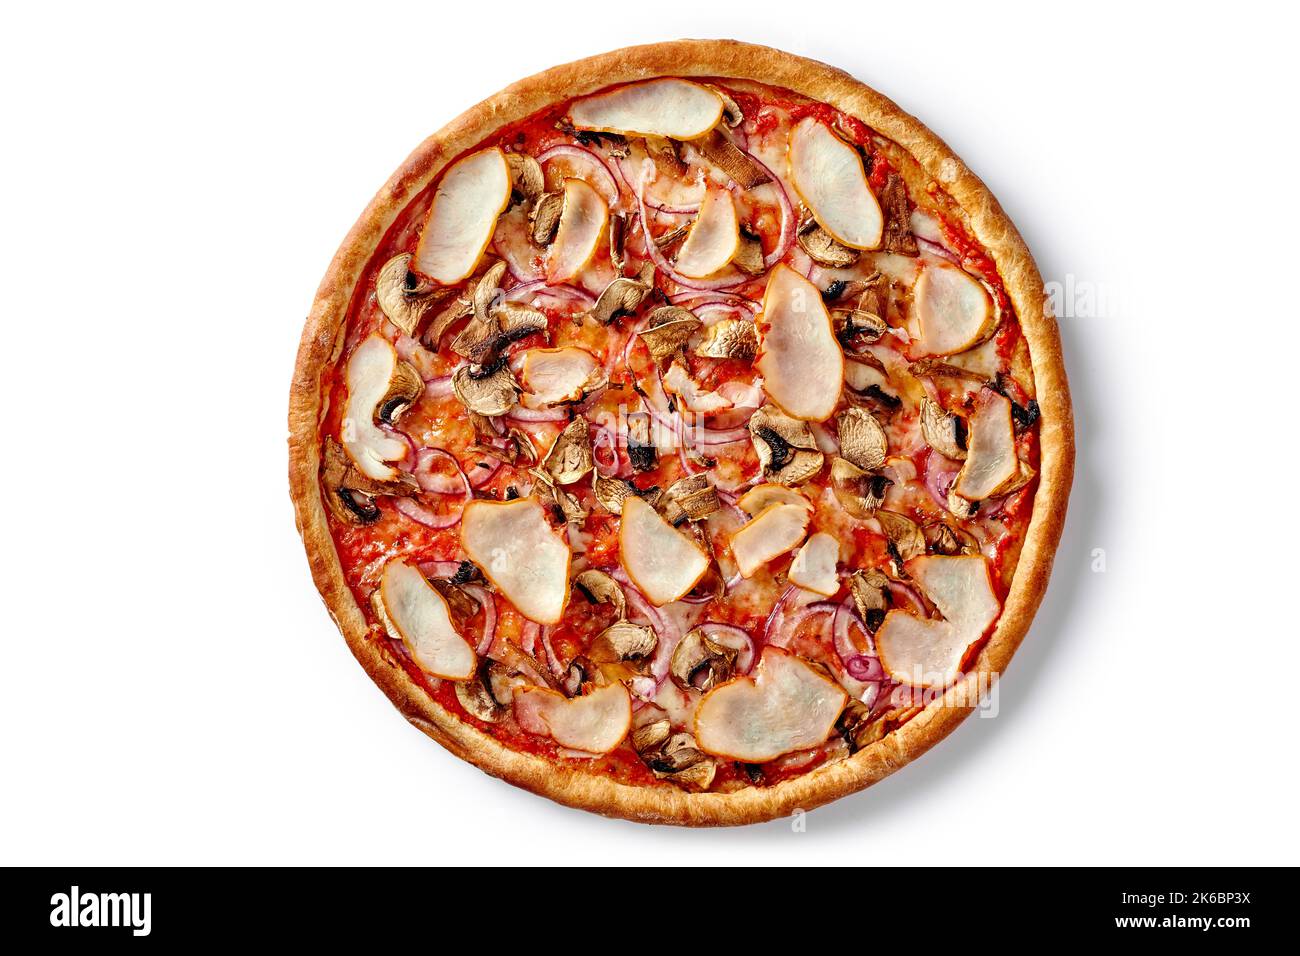 Dünne klassische Pizza mit geräuchertem Hähnchenfilet, Pilzen und violetten Zwiebeln, isoliert auf Weiß Stockfoto